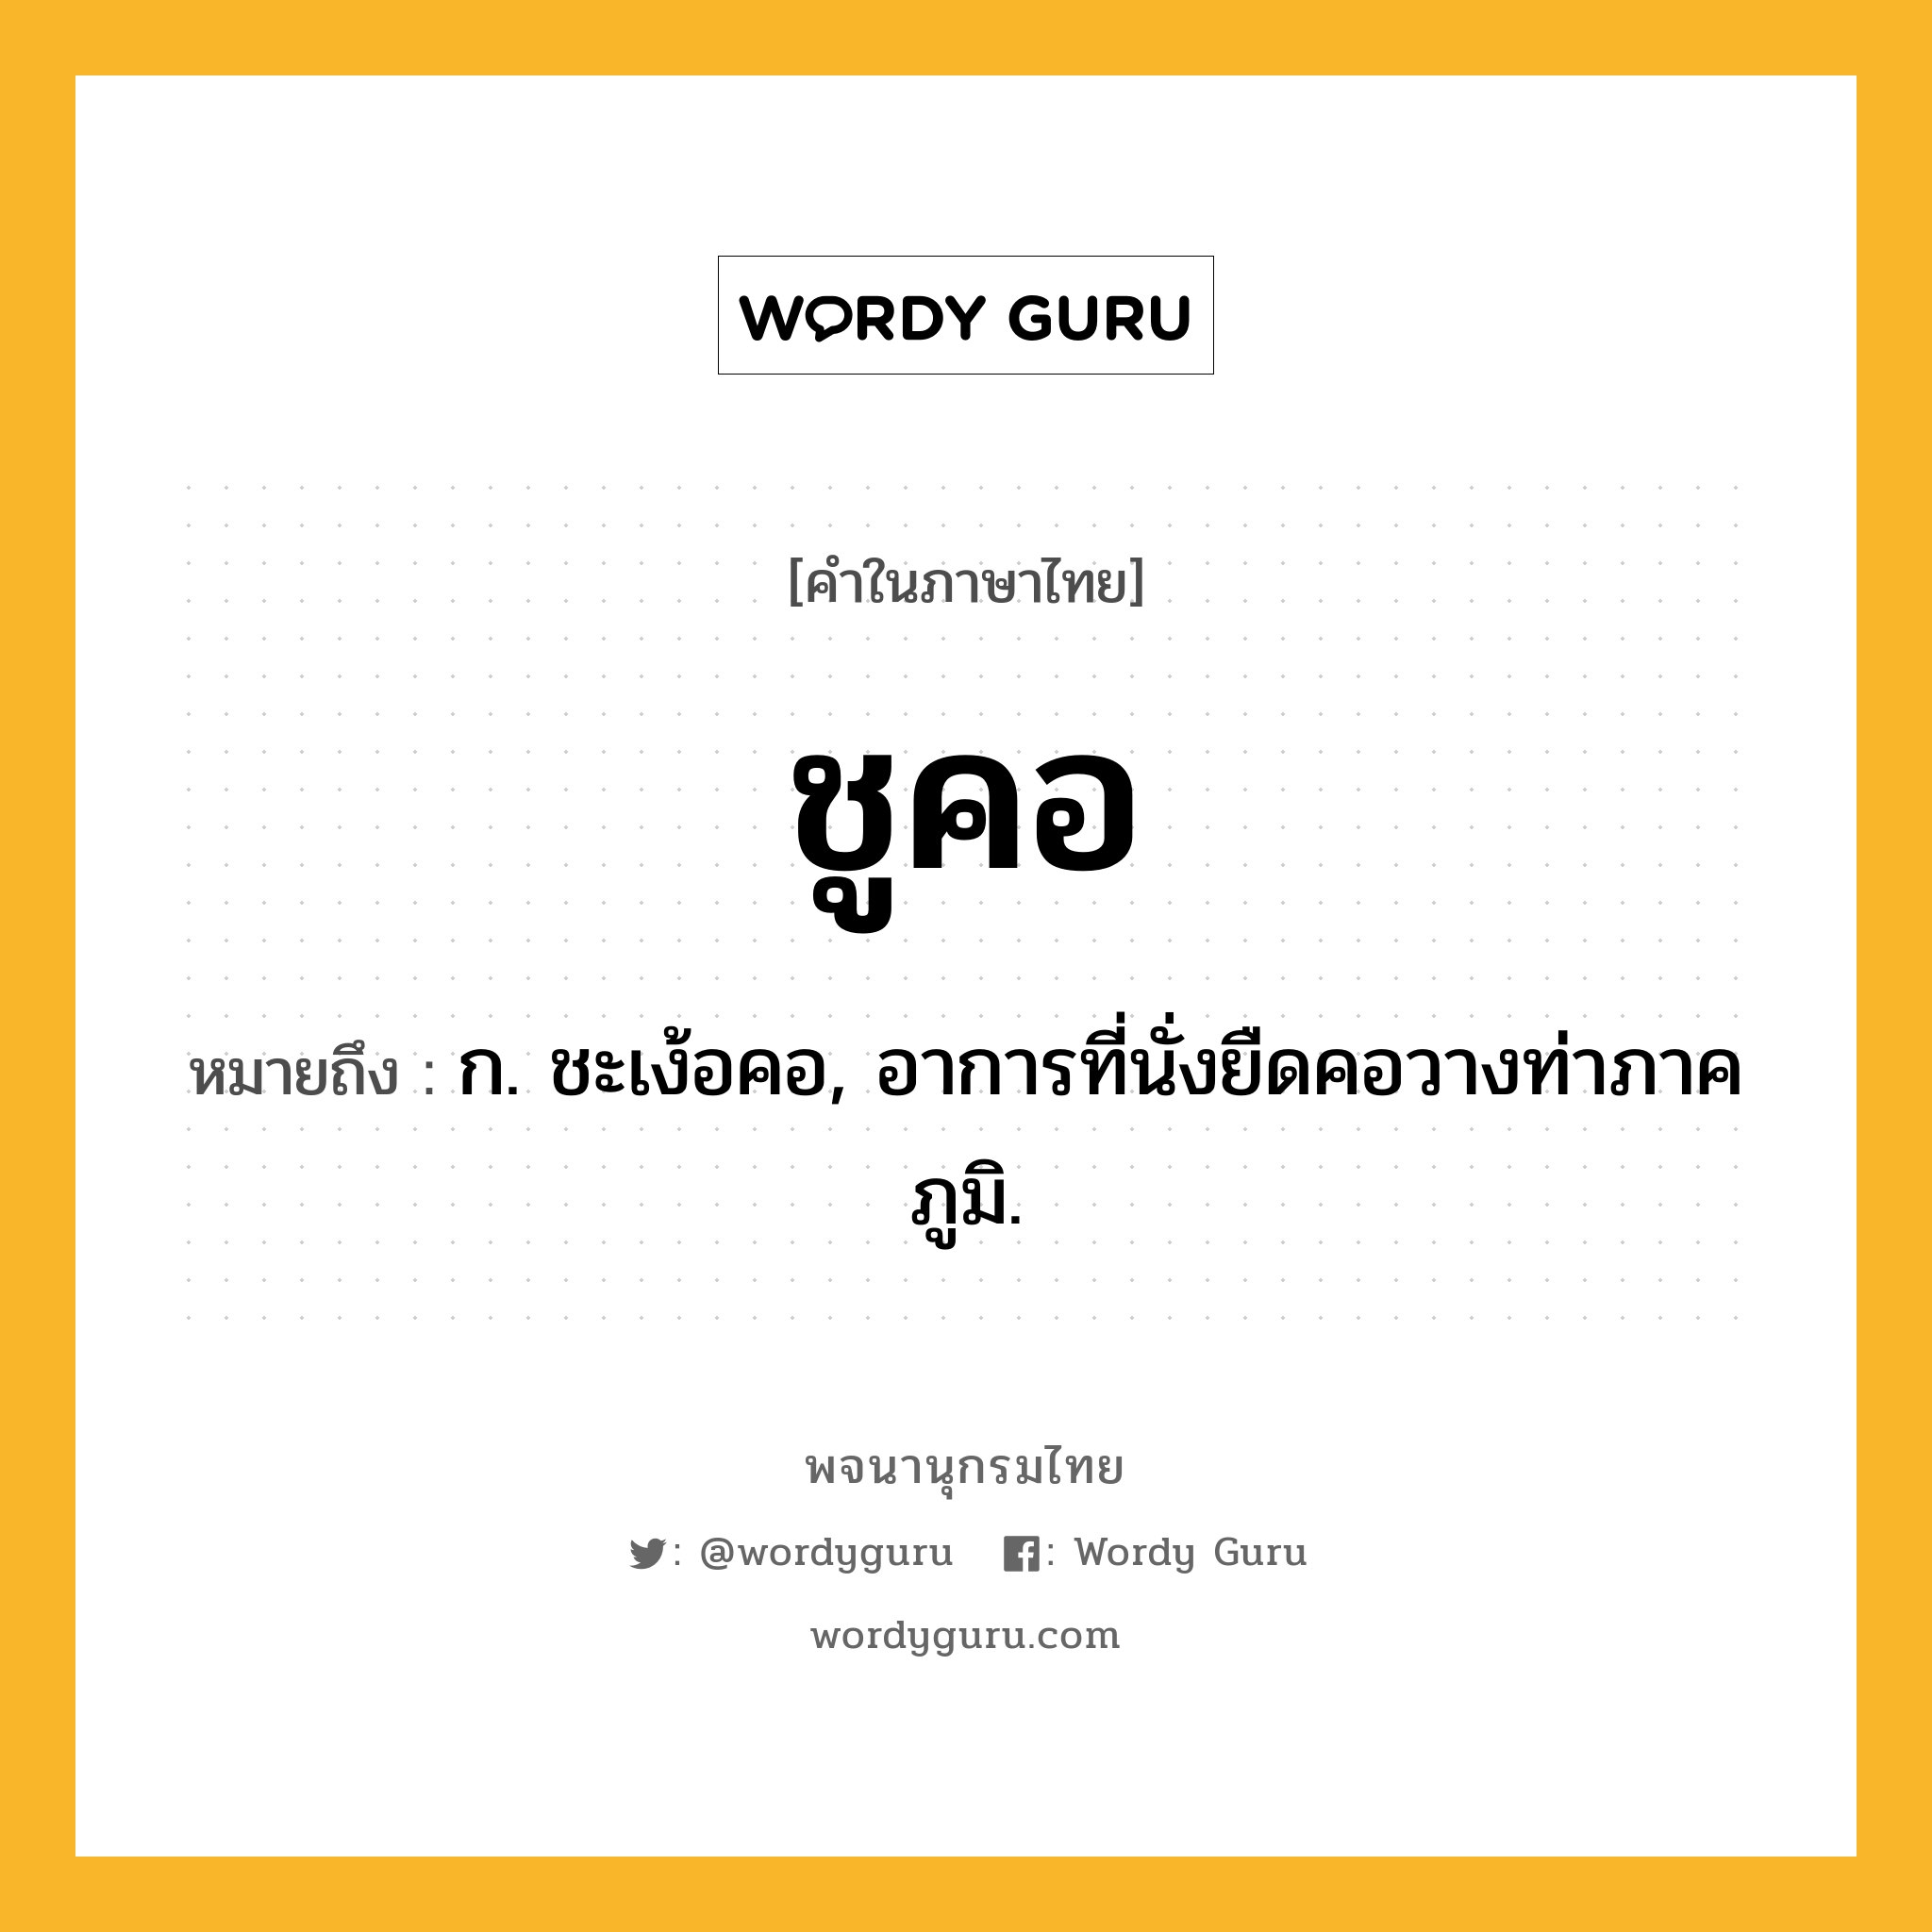 ชูคอ ความหมาย หมายถึงอะไร?, คำในภาษาไทย ชูคอ หมายถึง ก. ชะเง้อคอ, อาการที่นั่งยืดคอวางท่าภาคภูมิ.